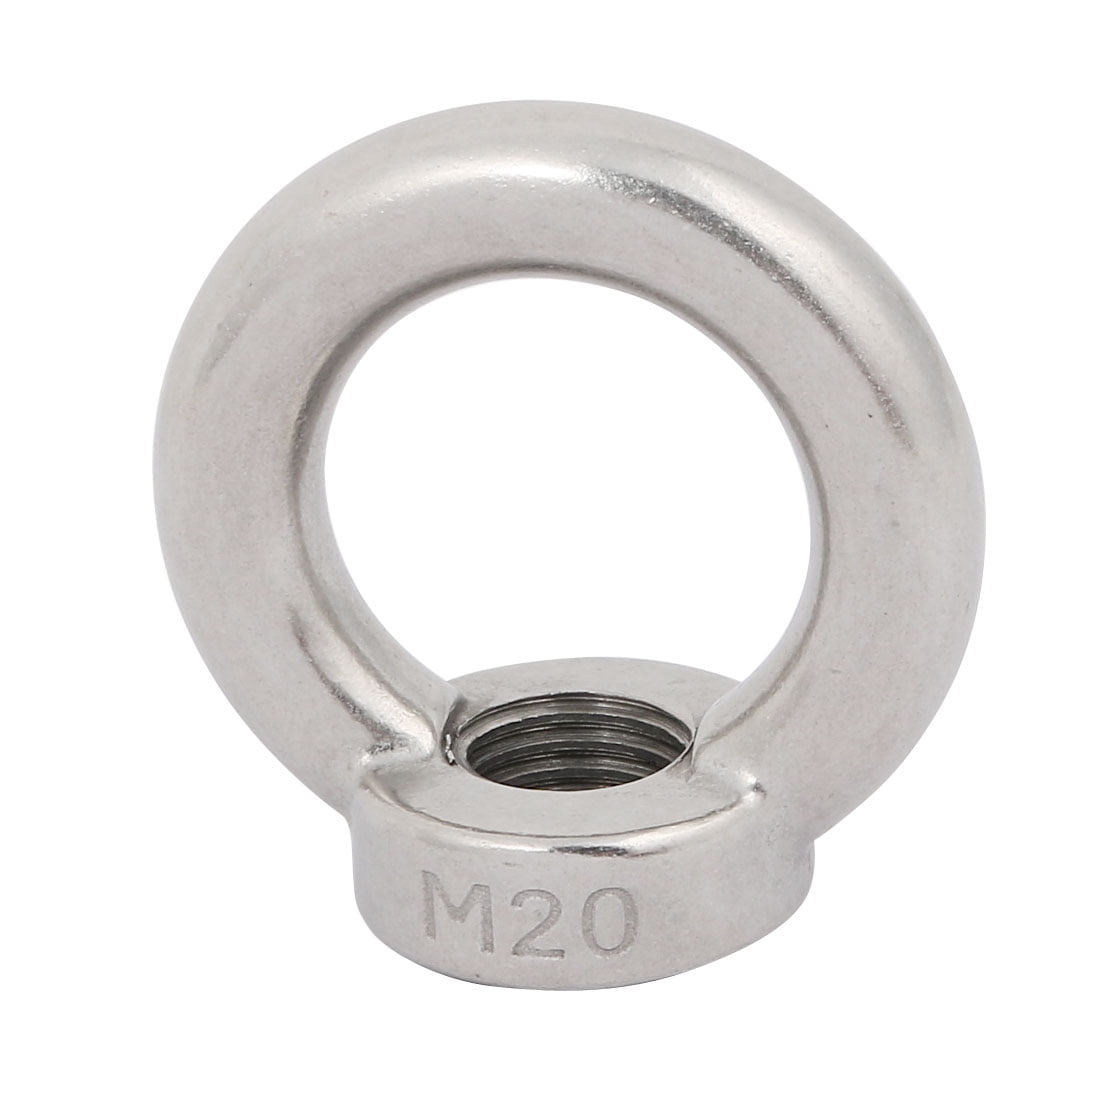 Silver M5 Ring Shape Screws Bolt 304 Stainless Steel Threaded Eye Bolt Set of 2 